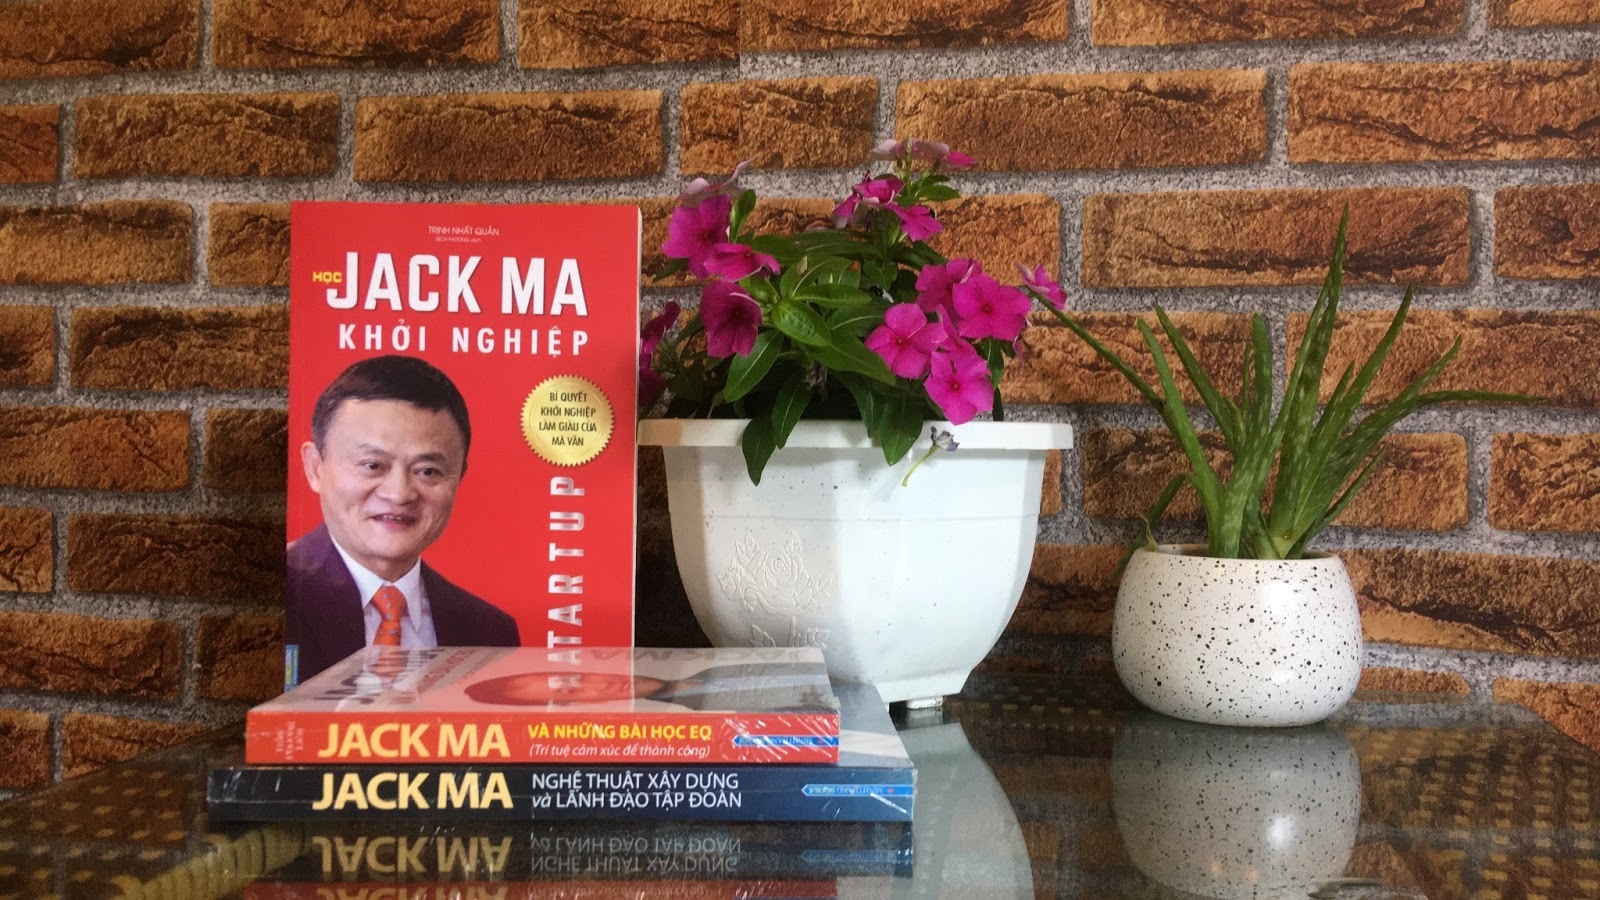 Tự truyện của Jack Ma